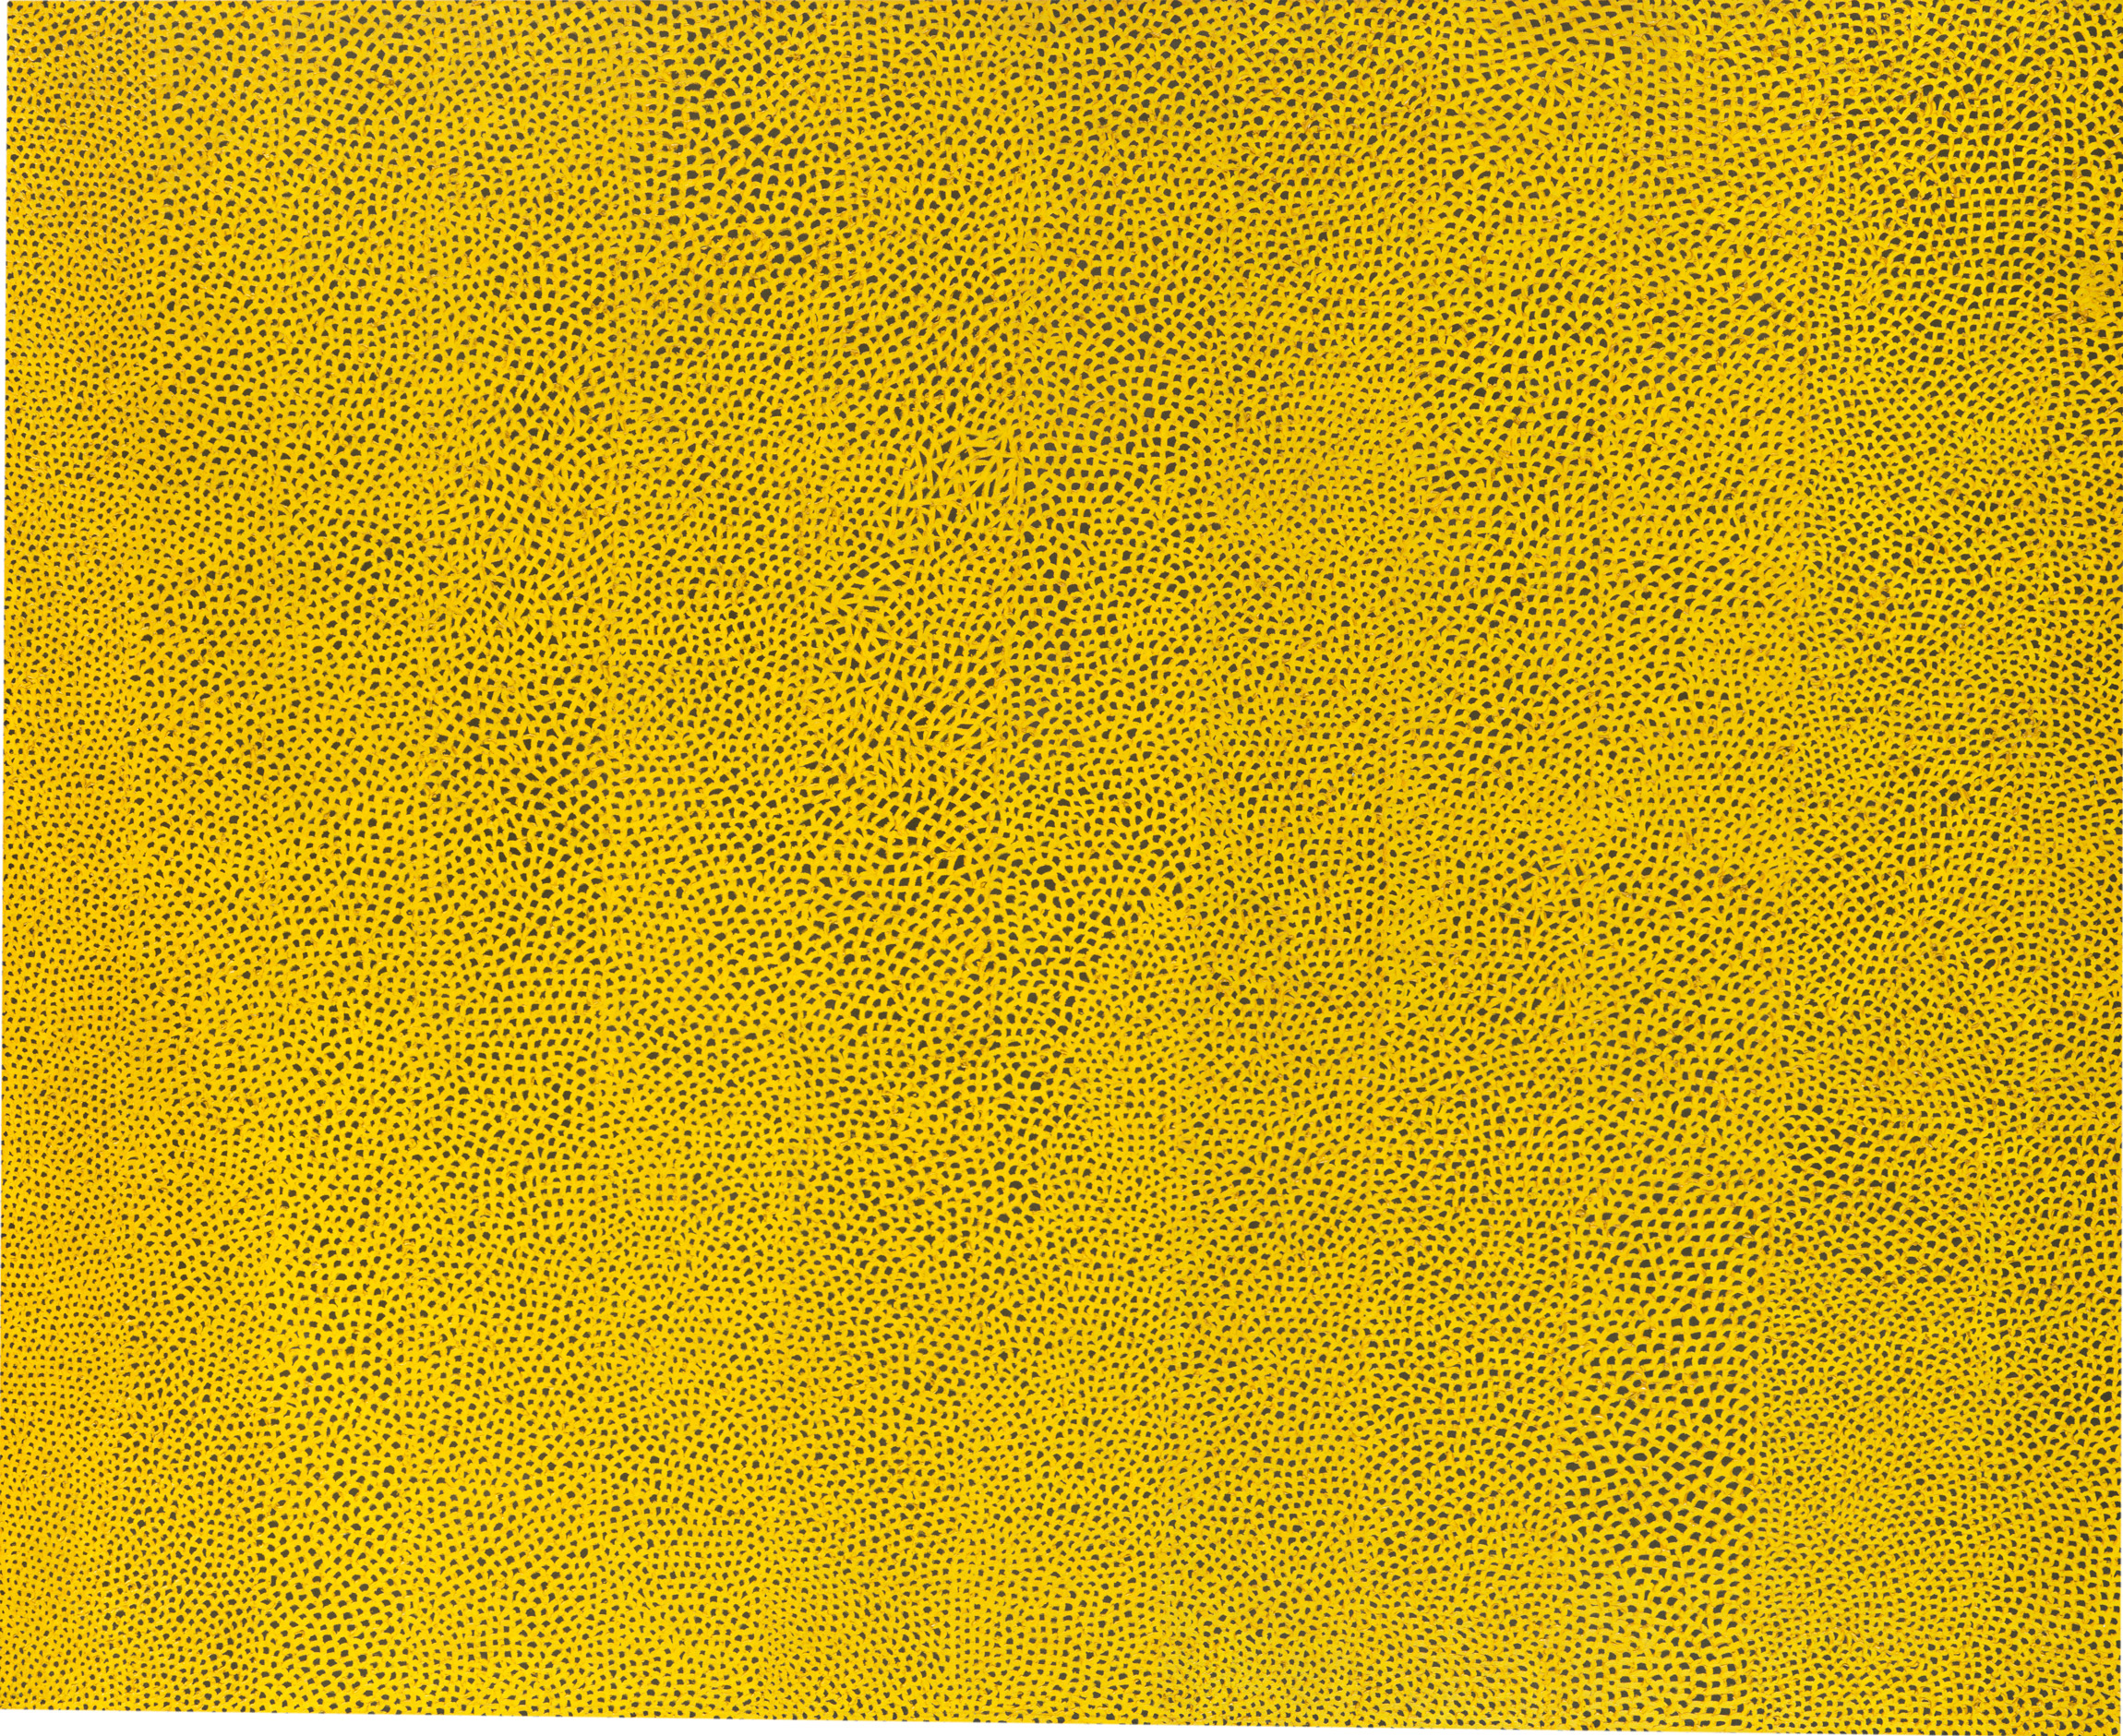 Yayoi Kusama - Infinity Nets Yellow